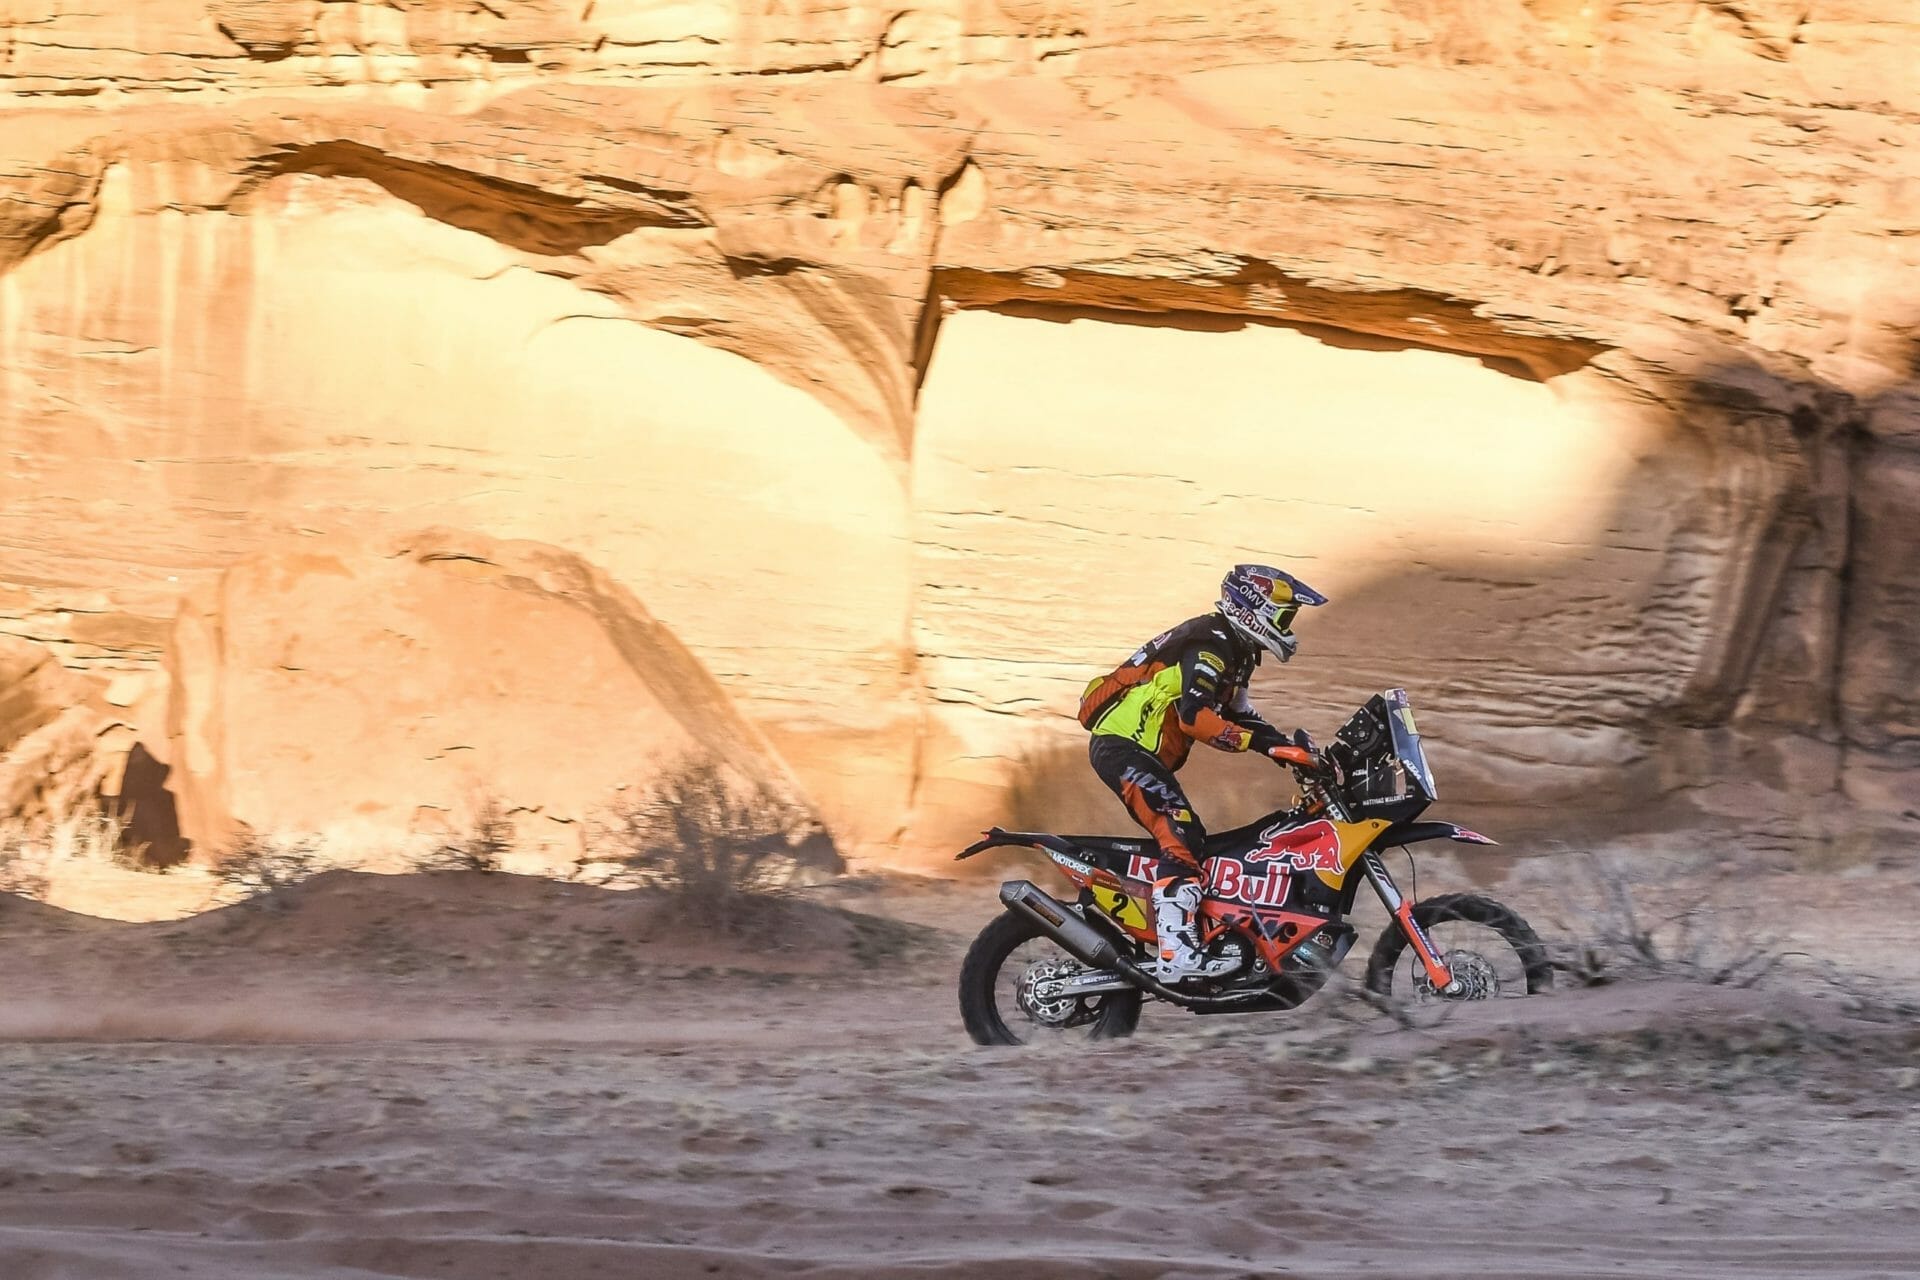 #Dakar 2020: Price holt auf, Sunderland gestürzt
- auch in der Motorrad Nachrichten App